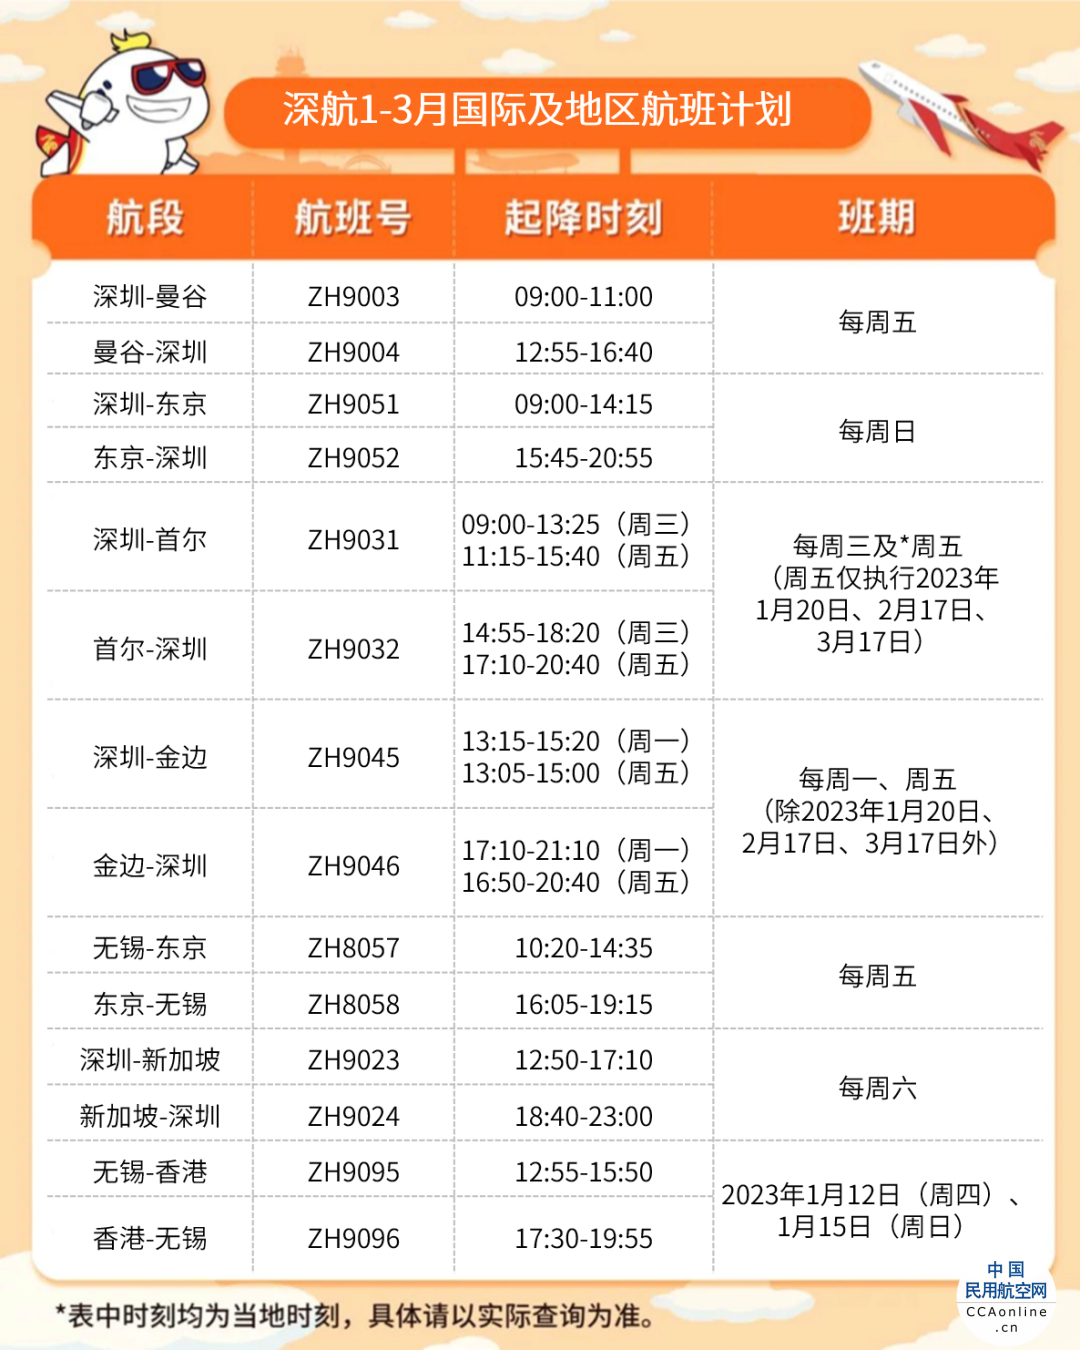 深圳航空1-3月国际及地区航班计划公布